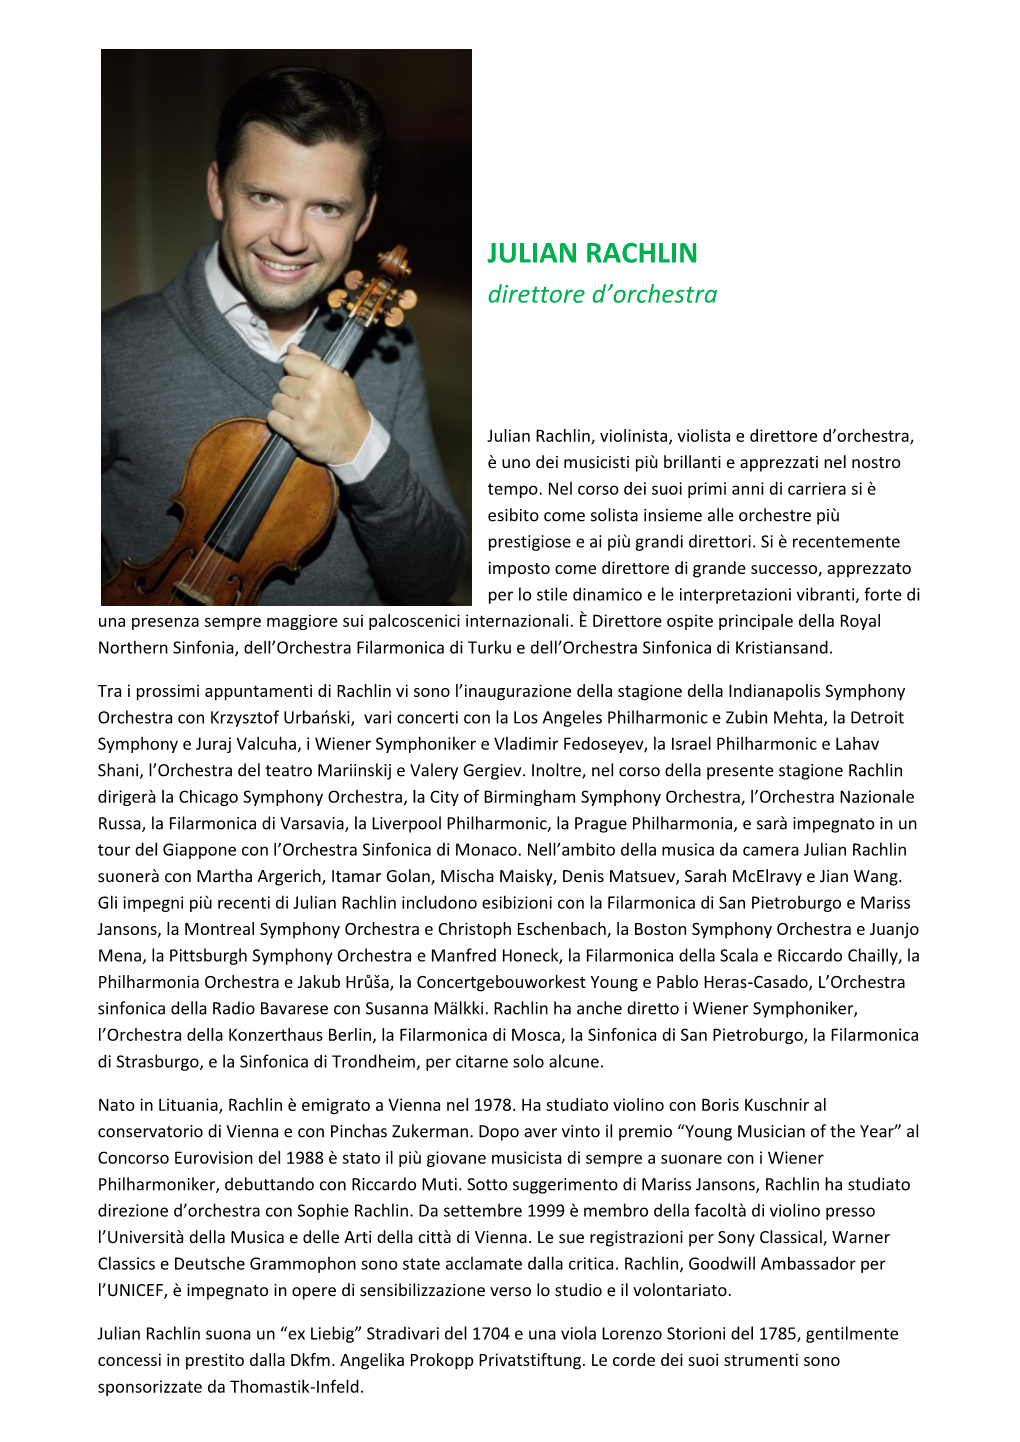 JULIAN RACHLIN Direttore D’Orchestra